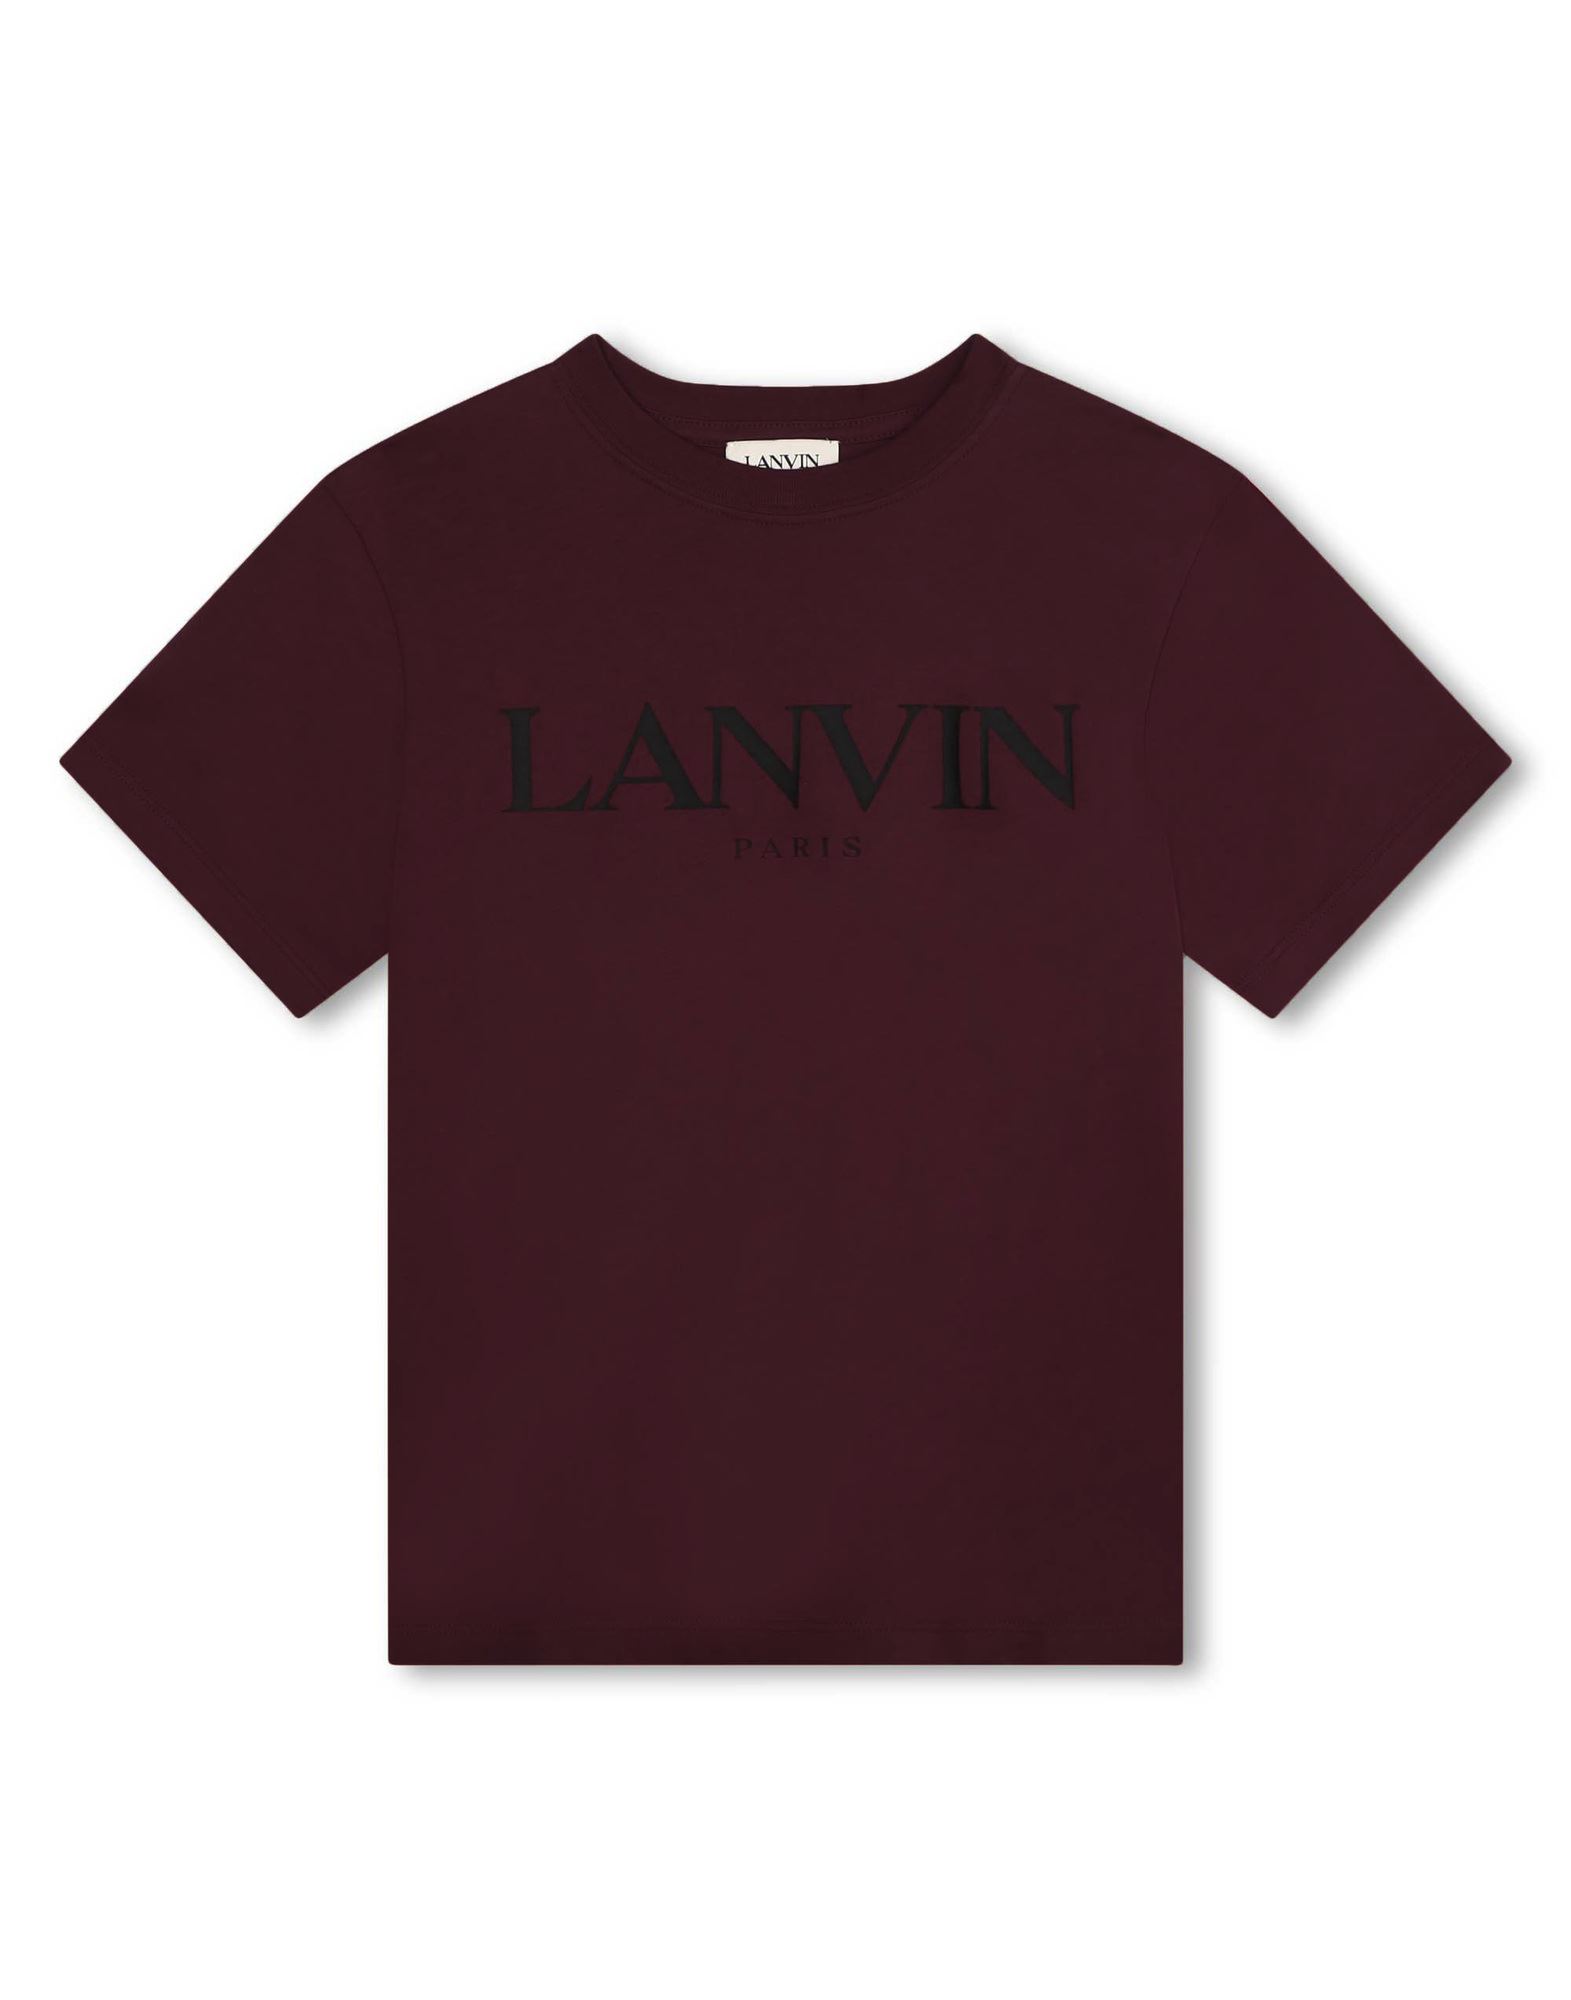 LANVIN T-shirts Kinder Rot von LANVIN